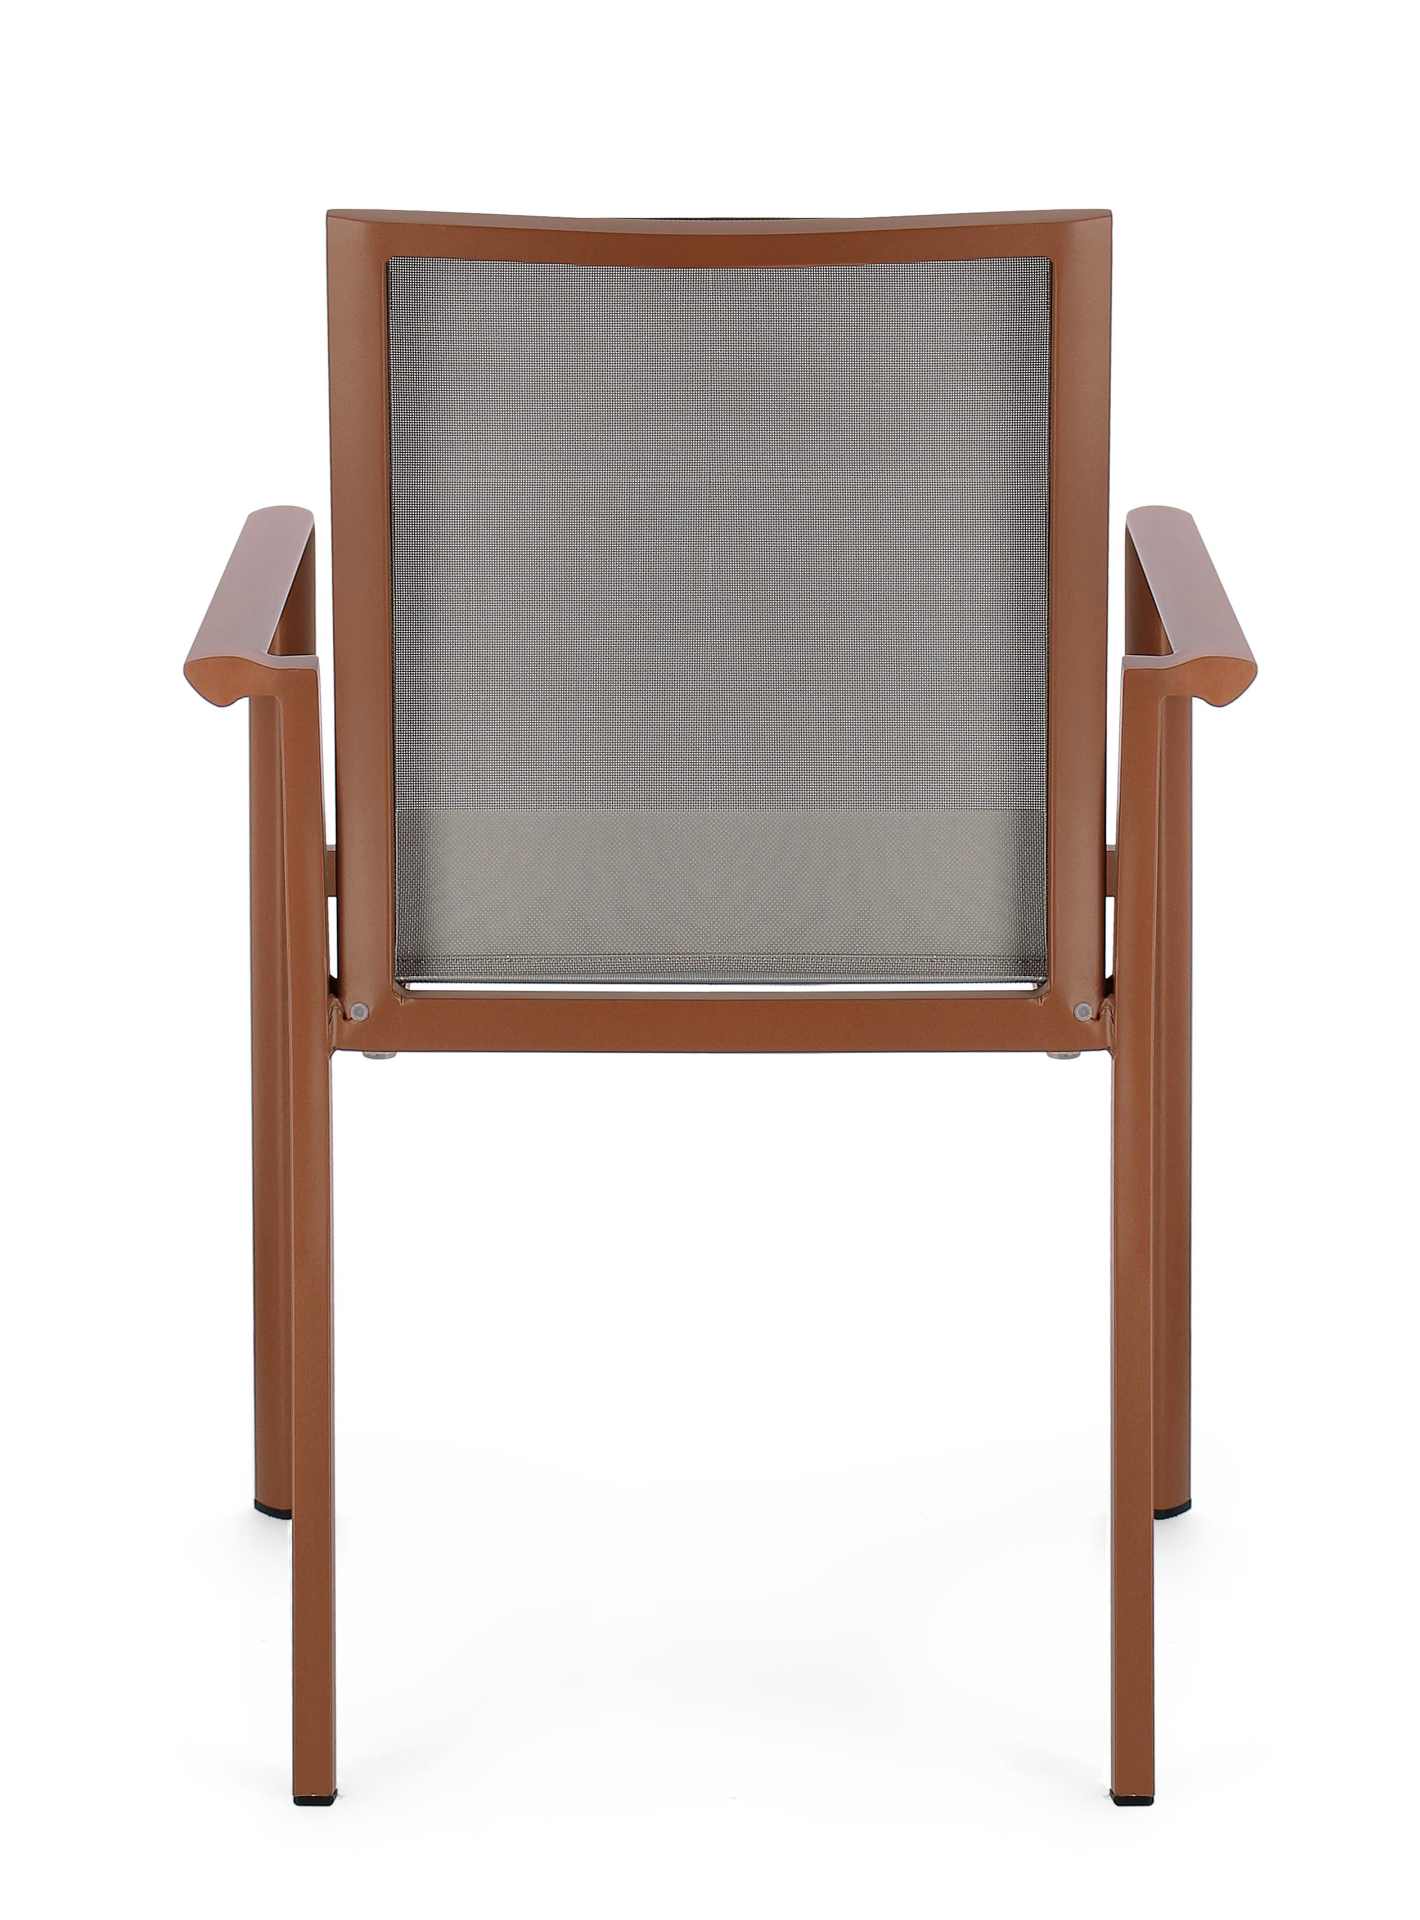 Der Gartenstuhl Konnor überzeugt mit seinem modernen Design. Gefertigt wurde er aus Textilene, welcher einen grauen Farbton besitzt. Das Gestell ist aus Aluminium und hat eine rote Farbe. Der Stuhl verfügt über eine Sitzhöhe von 45 cm und ist für den Outd